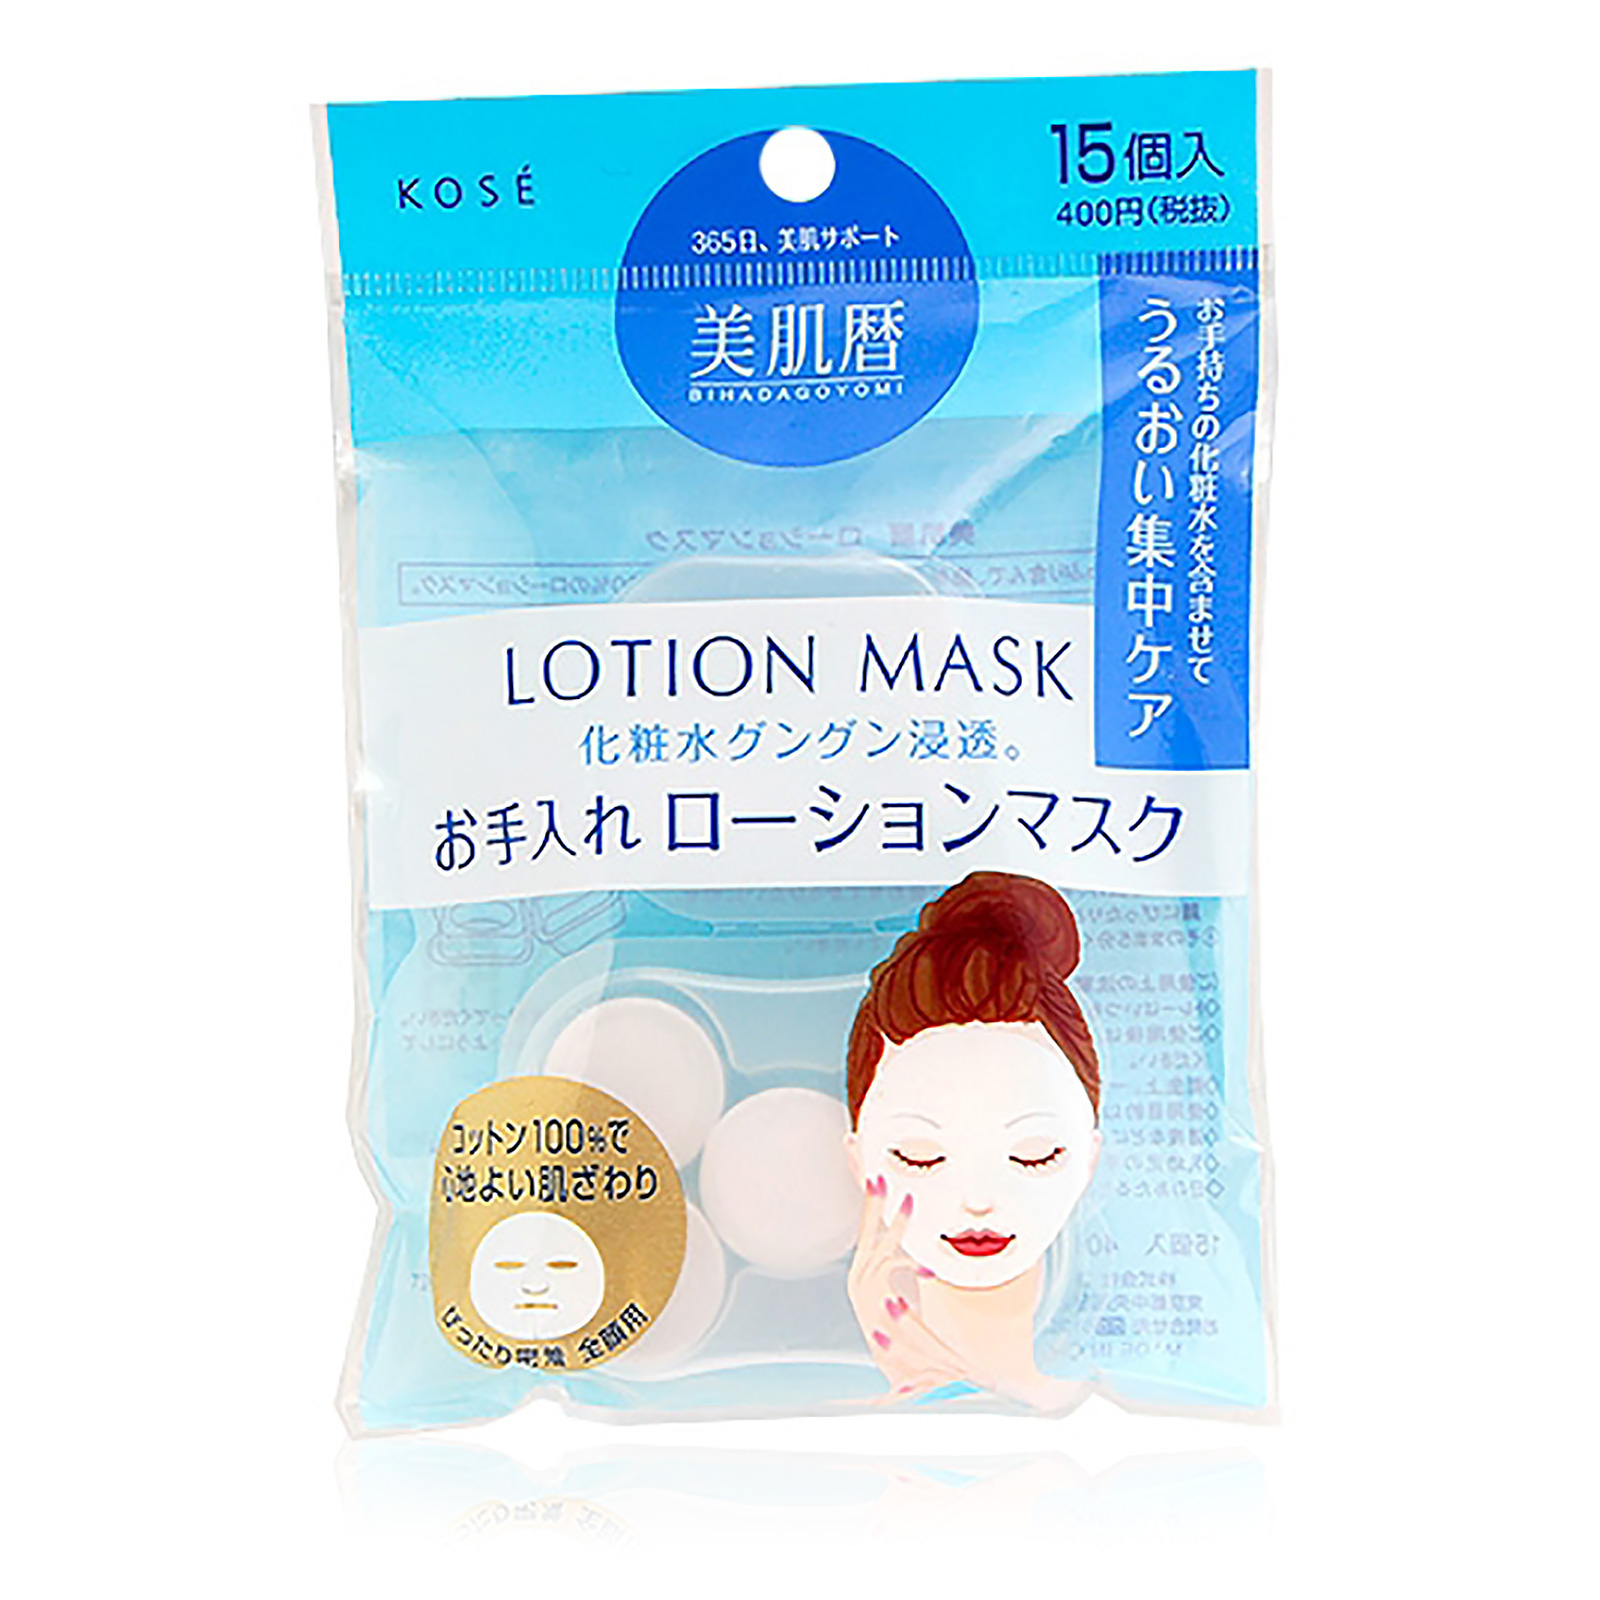 Bihadagoyomi Lotion Mask